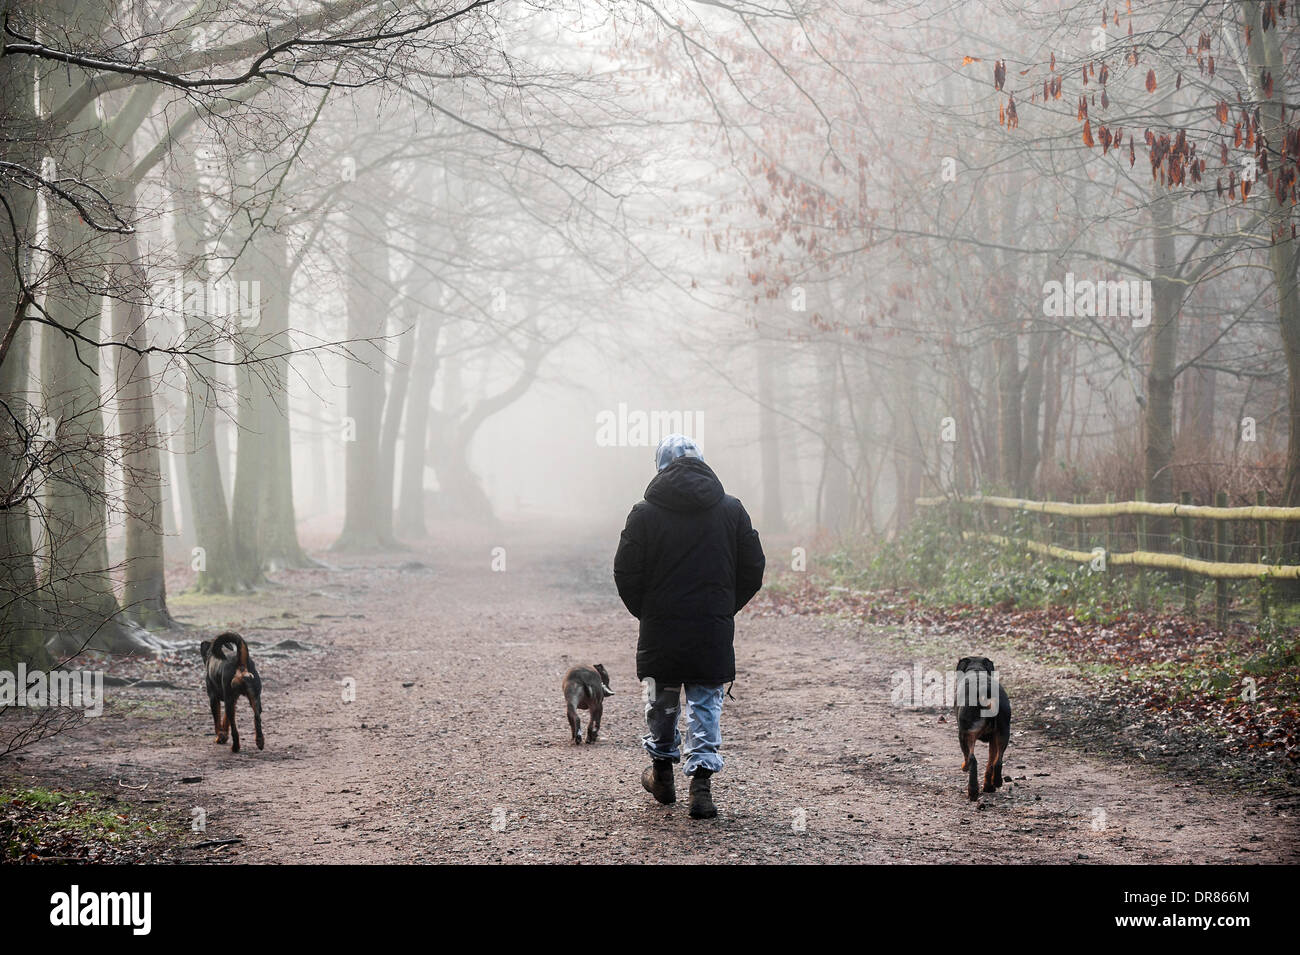 Brentwood, Essex, Regno Unito. 21 gennaio 2014 un dog walker e i suoi tre animali domestici brave la fitta nebbia avvolgenti campagna dell'Essex. Fotografo: Gordon Scammell/Alamy Live News Foto Stock